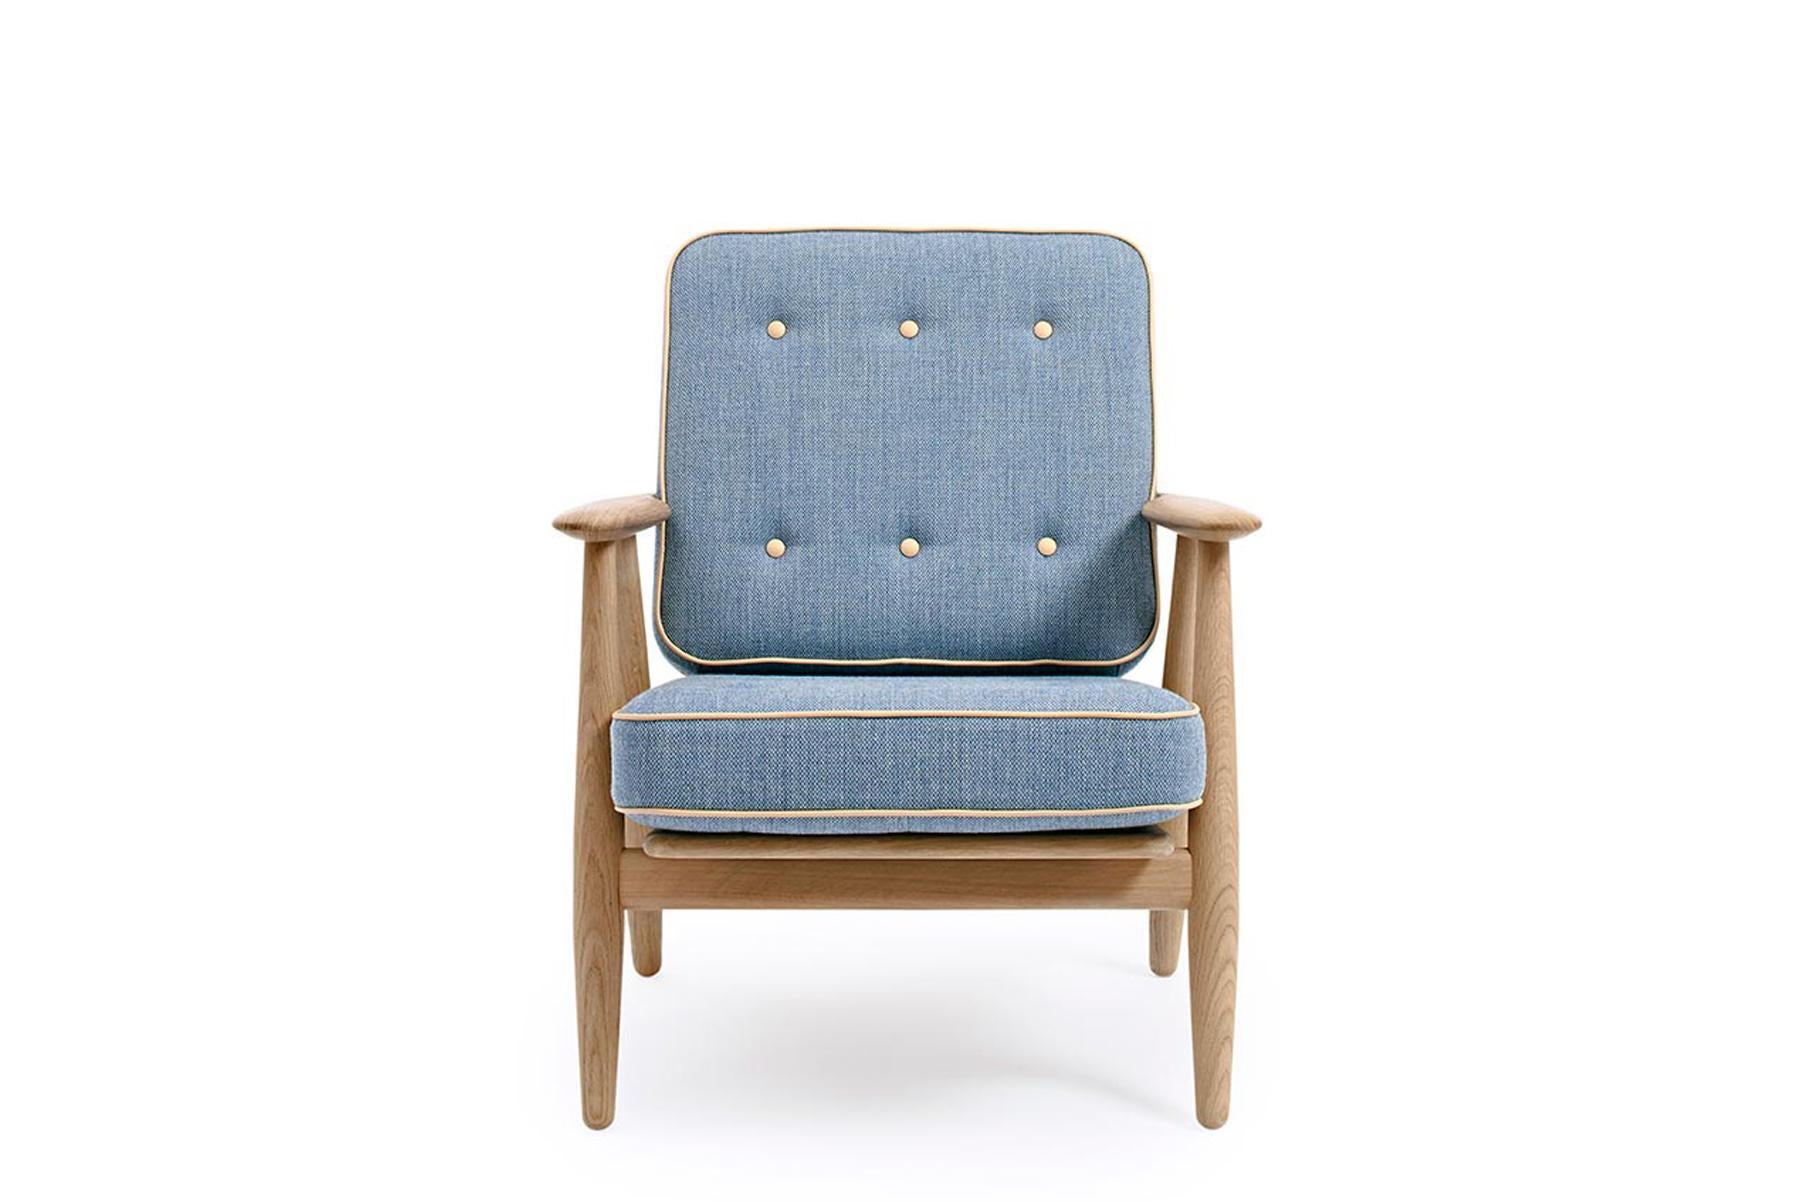 Der Sessel 240 wurde 1955 von Hans Wegner für GETAMA entworfen und zeichnet sich durch unvergleichliche Handwerkskunst und Ergonomie aus. Die geschnitzten, zigarrenförmigen Arme bringen die natürliche Schönheit der Holzmaserung zur Geltung.